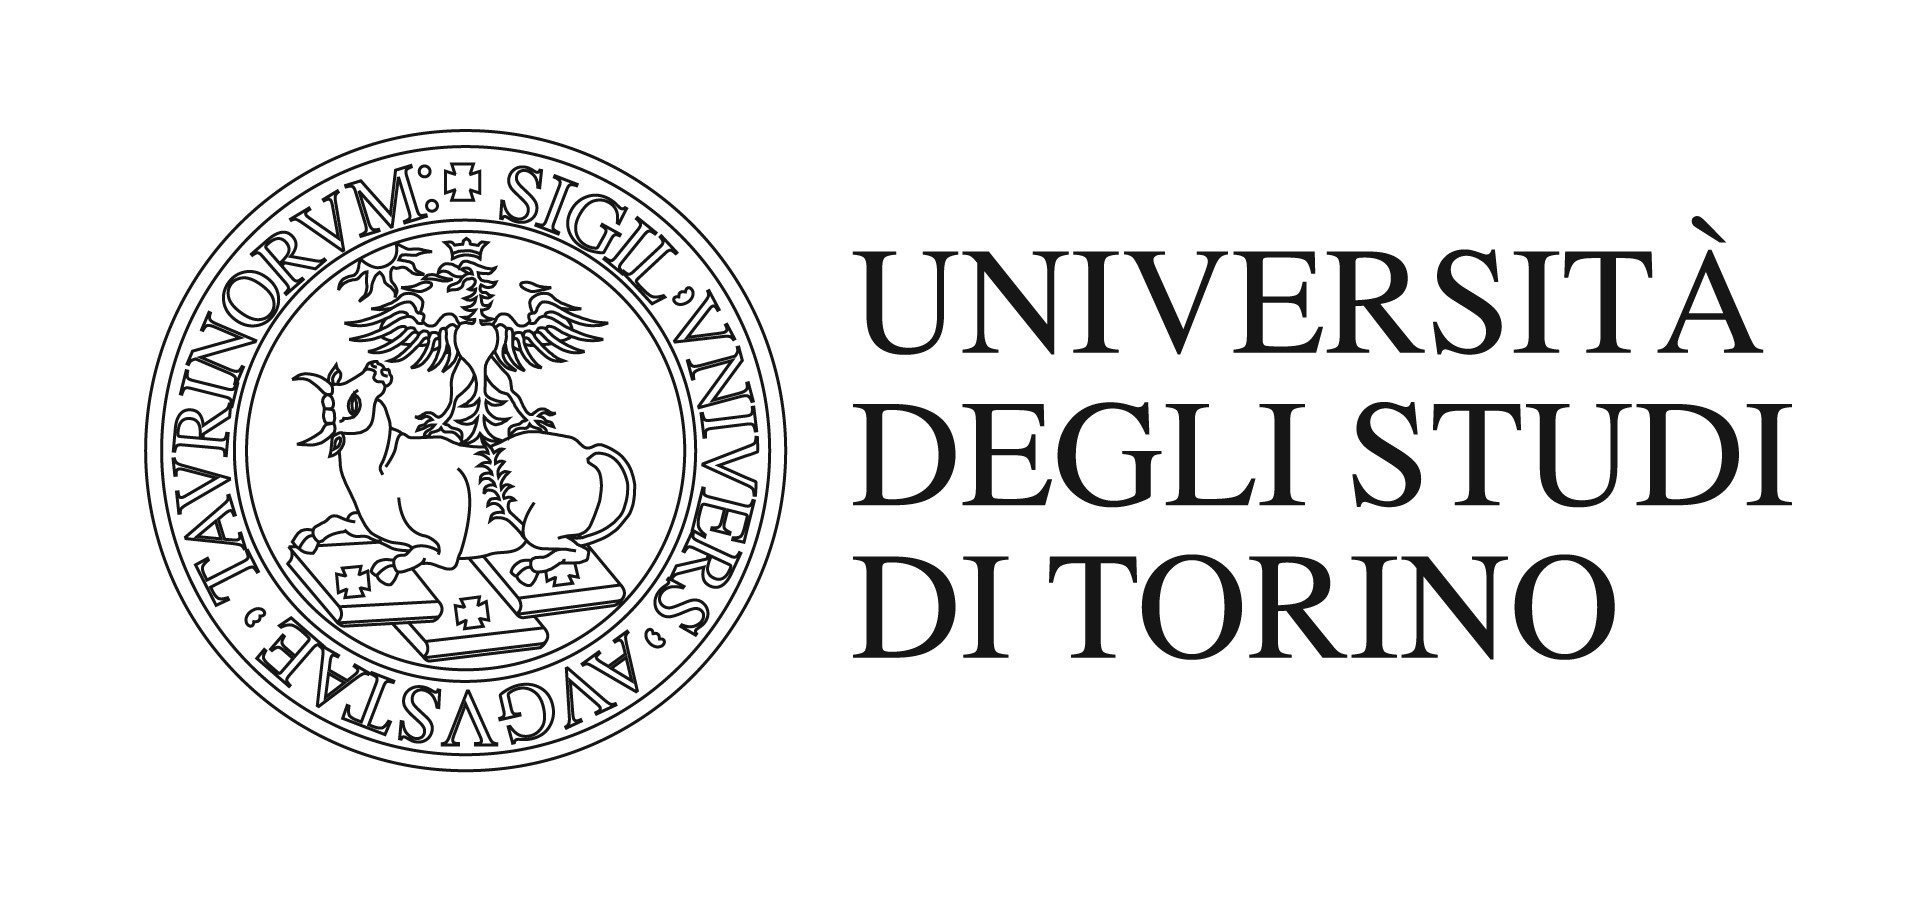 Logo université de turin